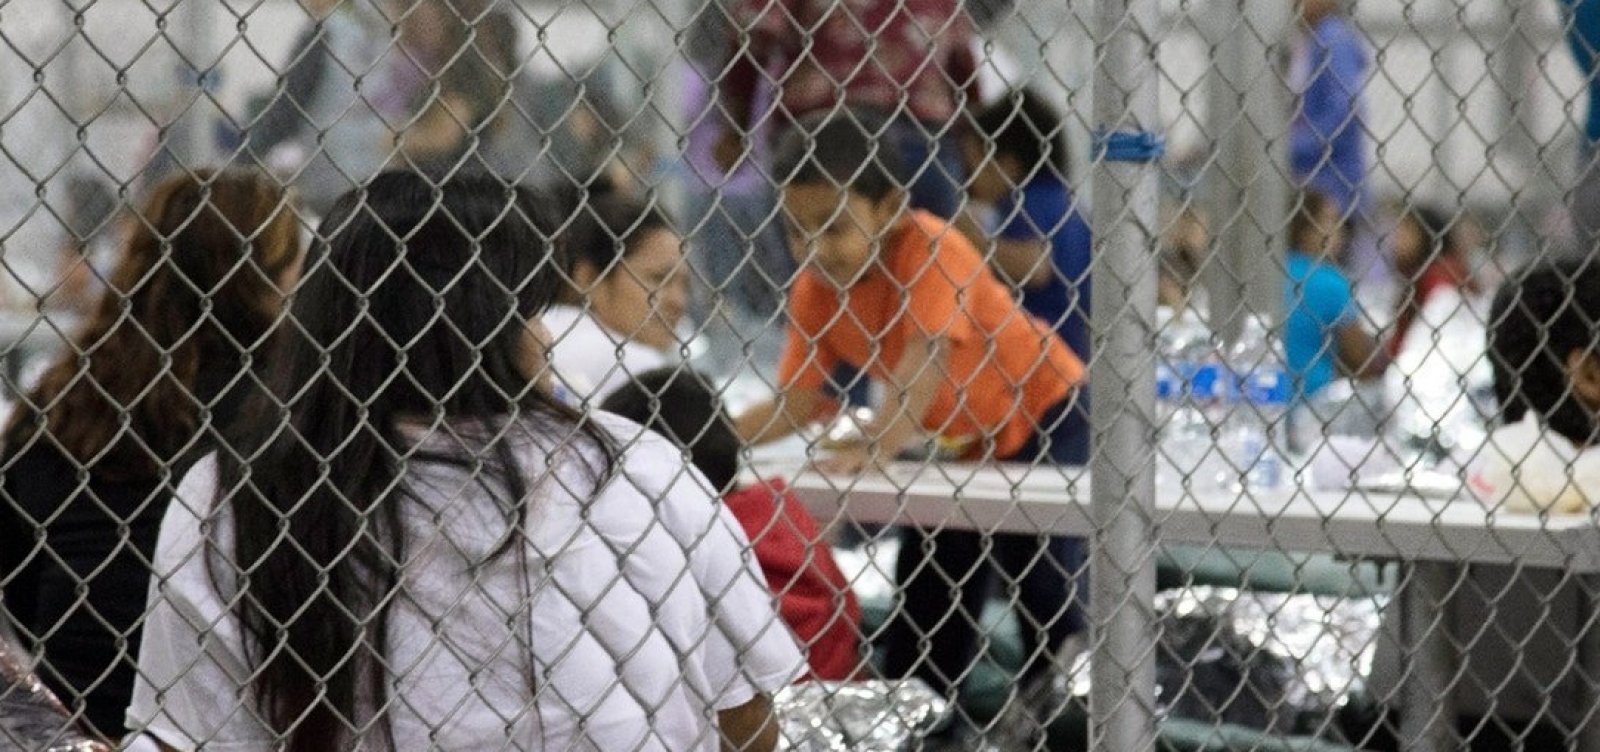 Juiz nos EUA suspende deportação de famílias migrantes reunidas